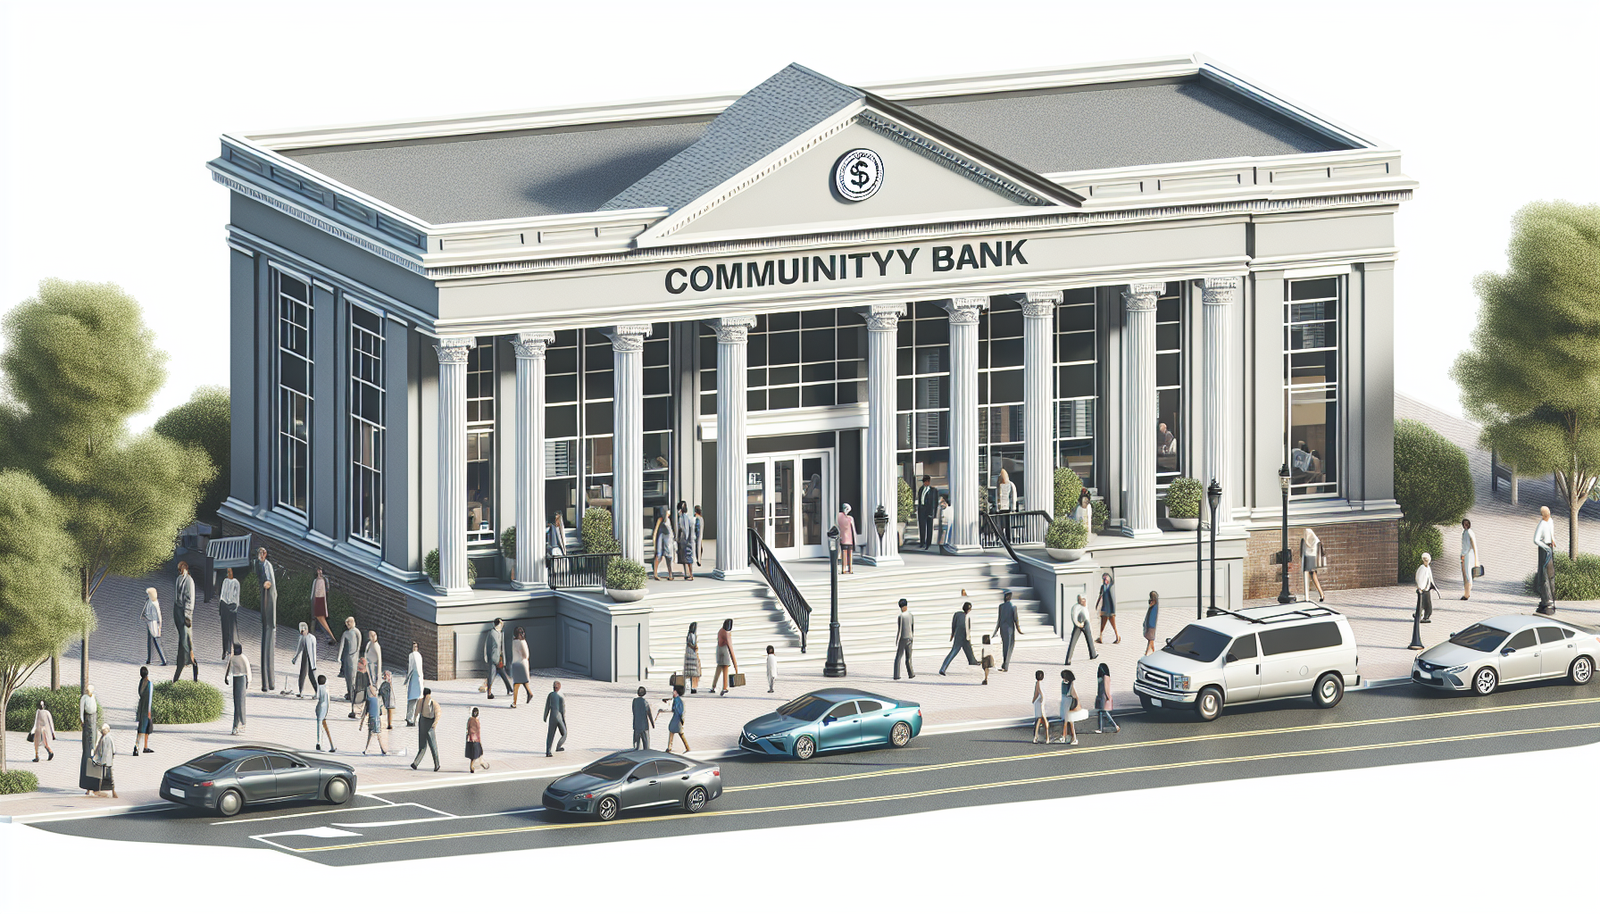 Community Bank Of Louisiana